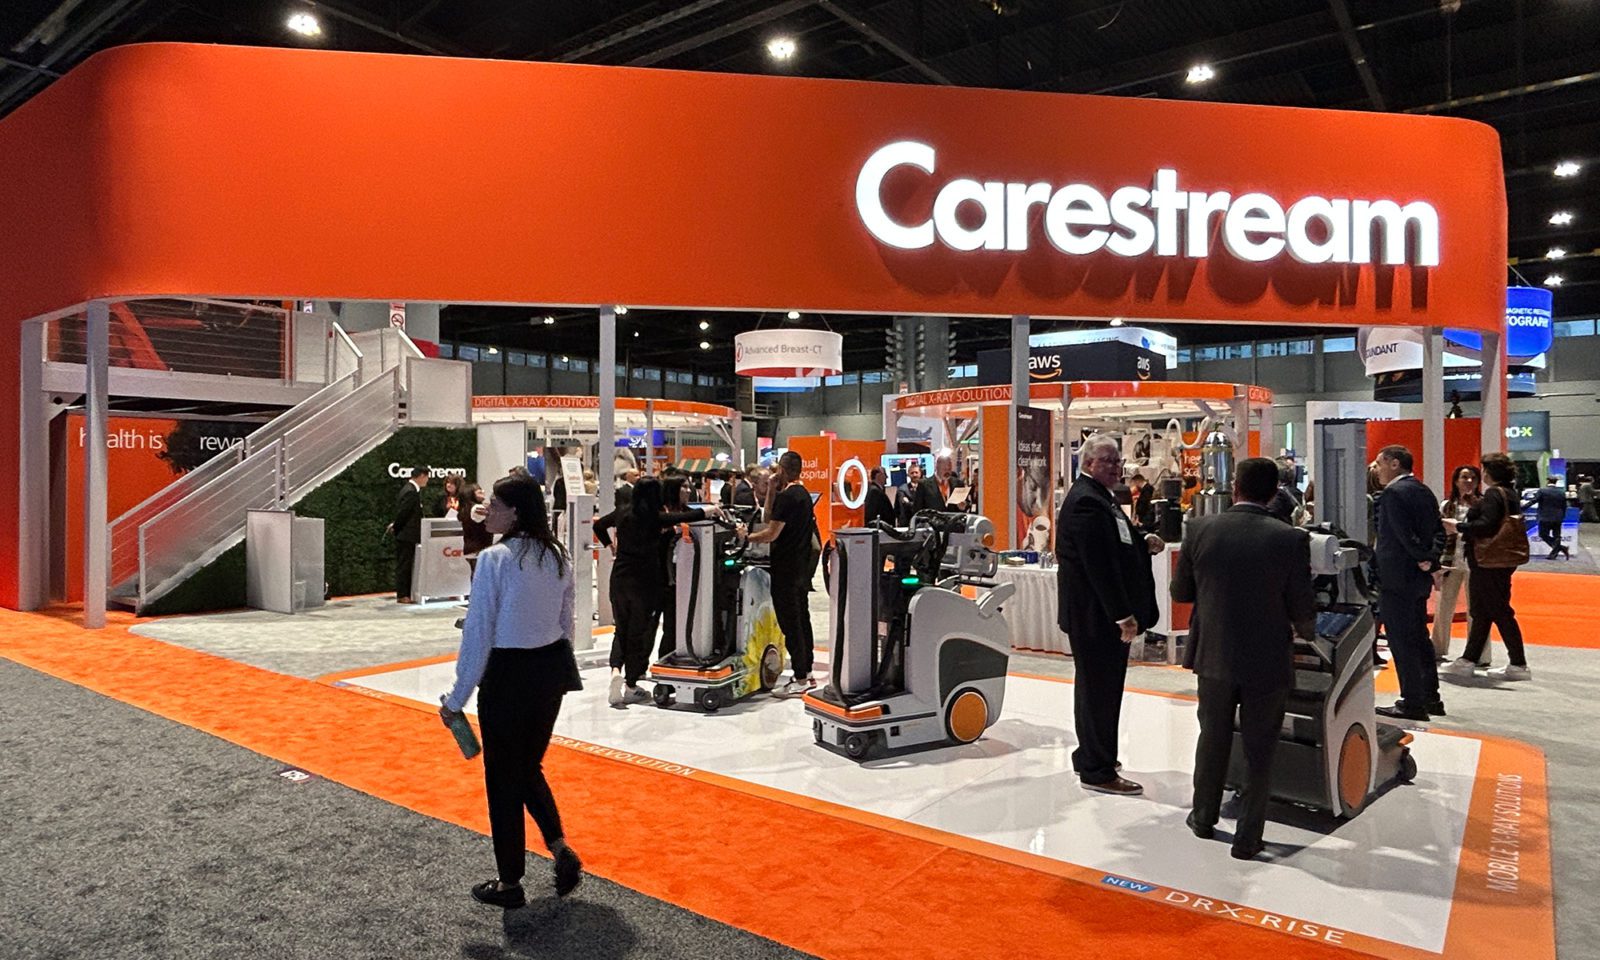 Carestream's bright orange booth